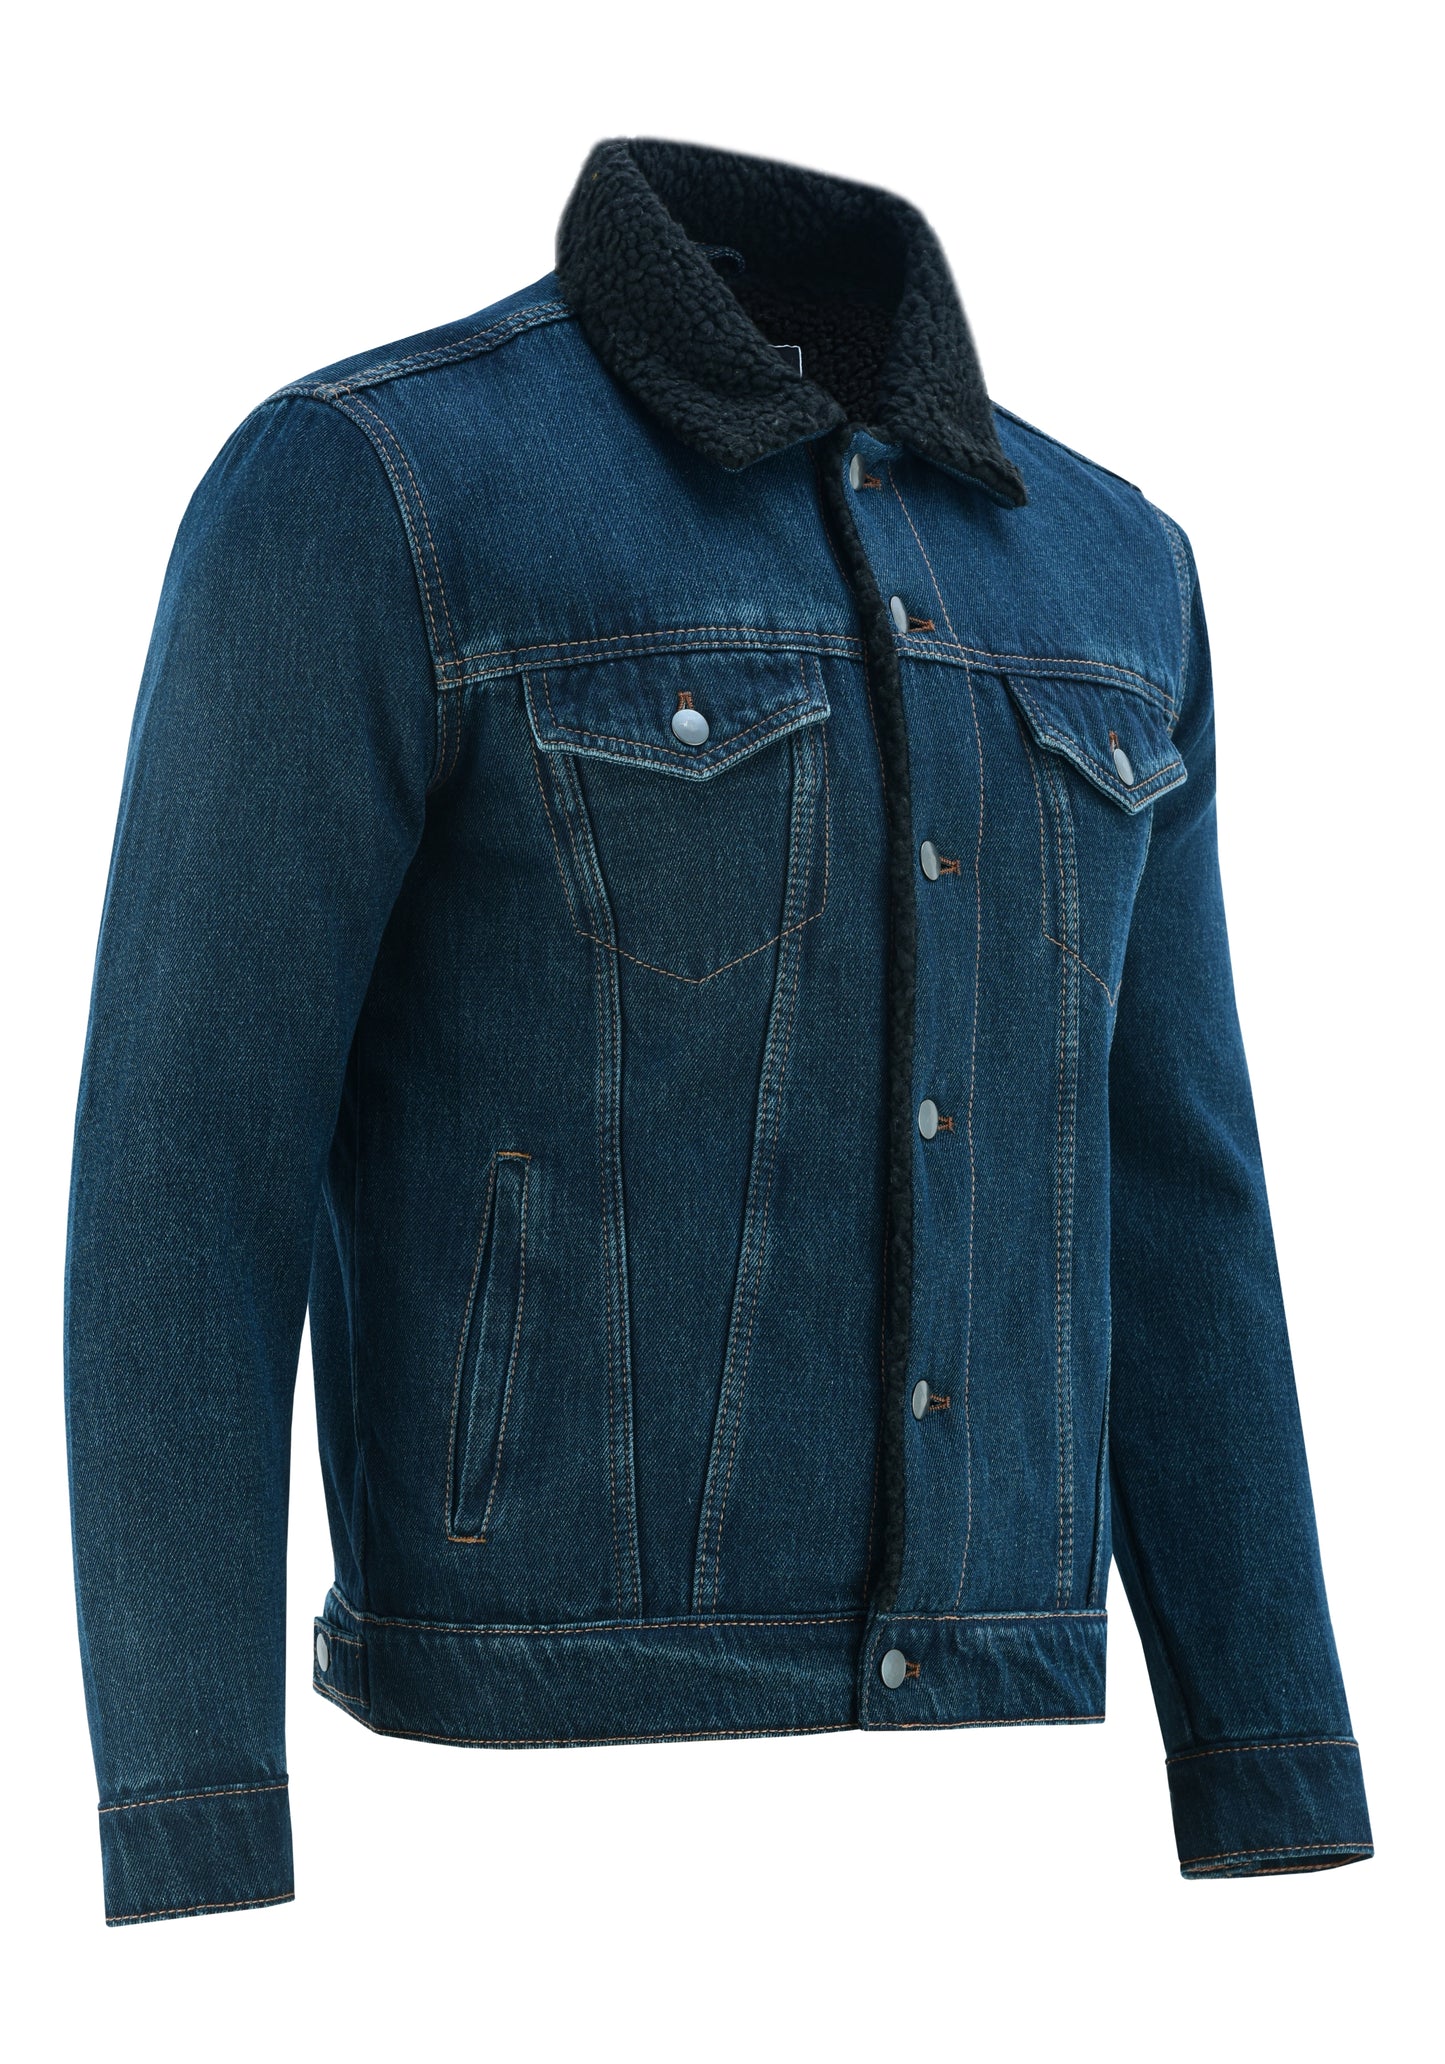 KS104 Dirty Blue Denim Fur Jackets Hip-hop Style  Kanvos Sports